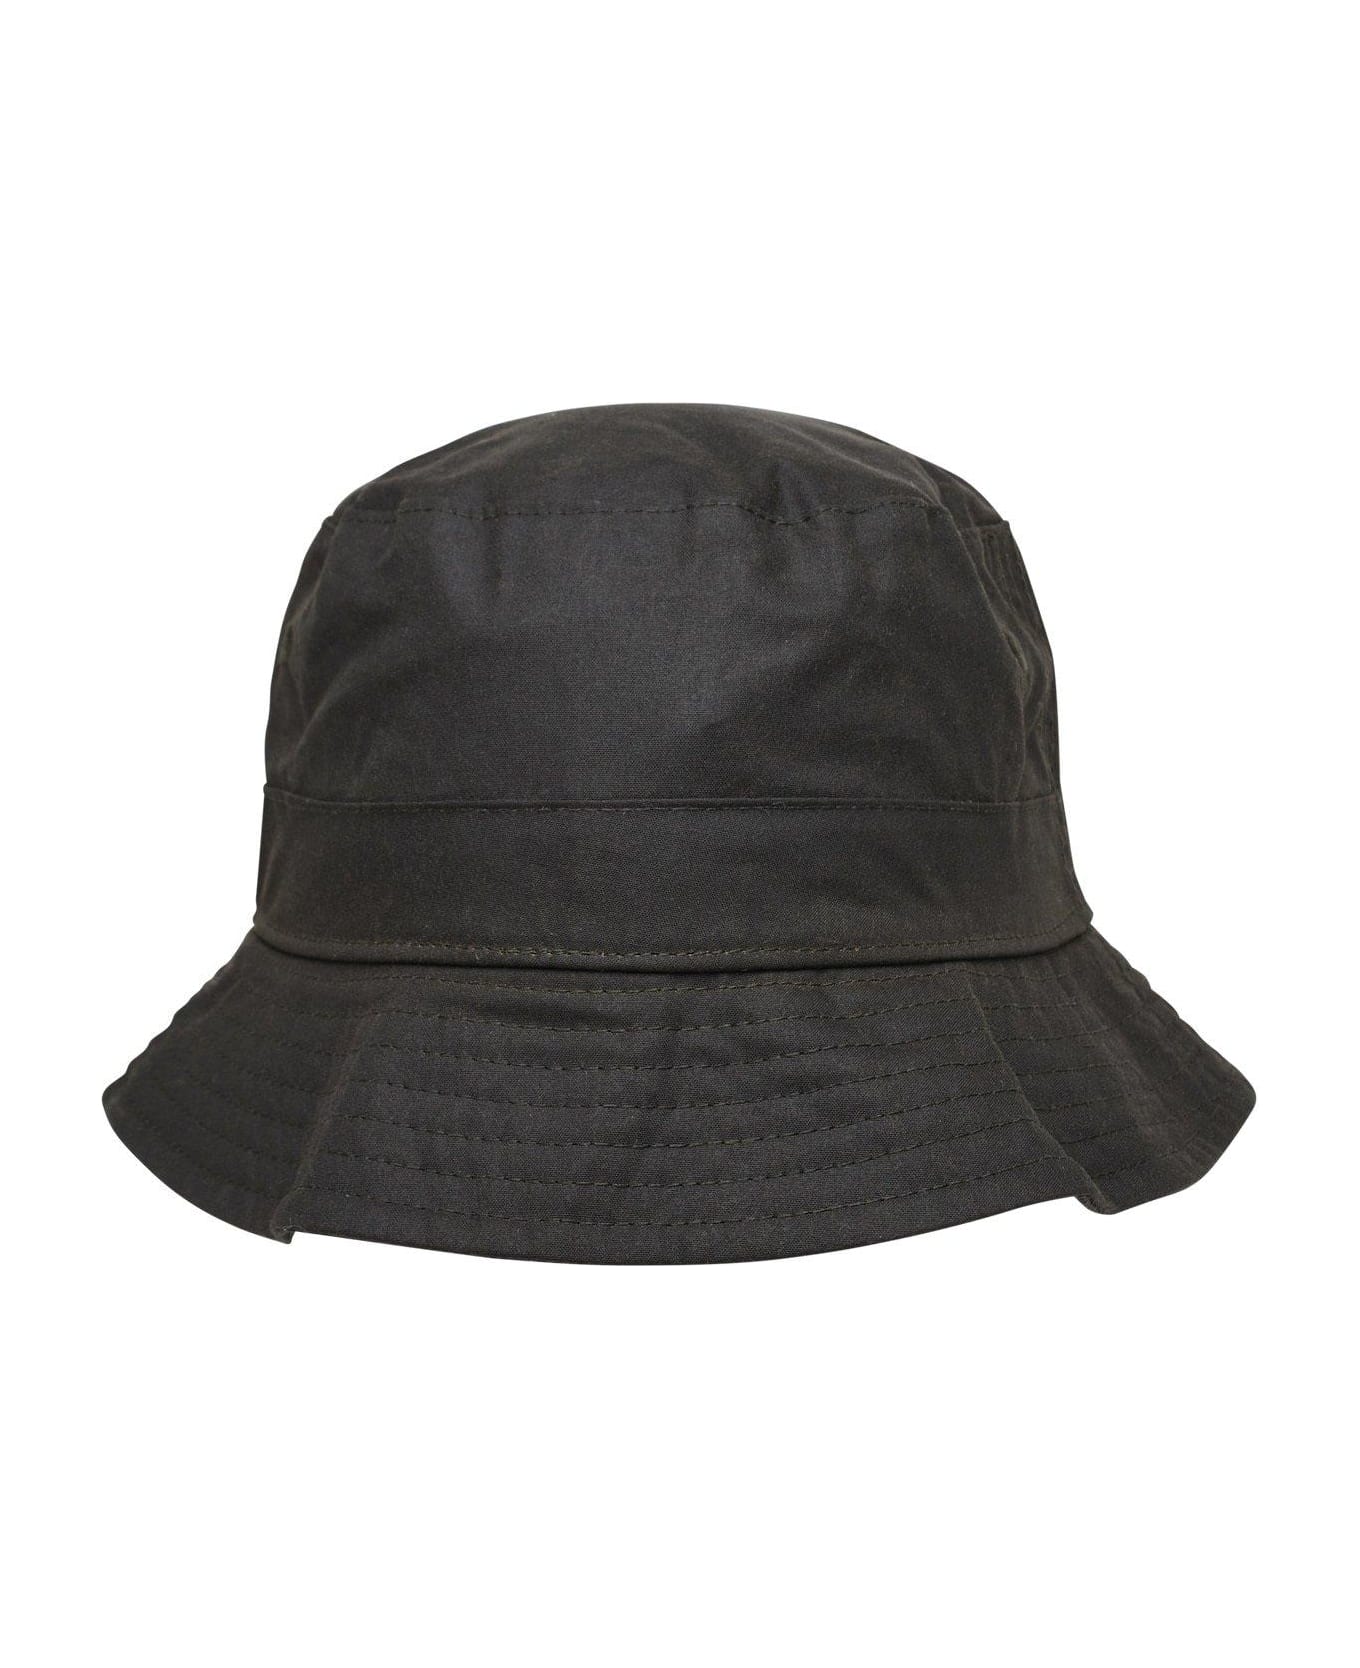 Barbour Belsay Logo Embroidered Bucket Hat - Olive